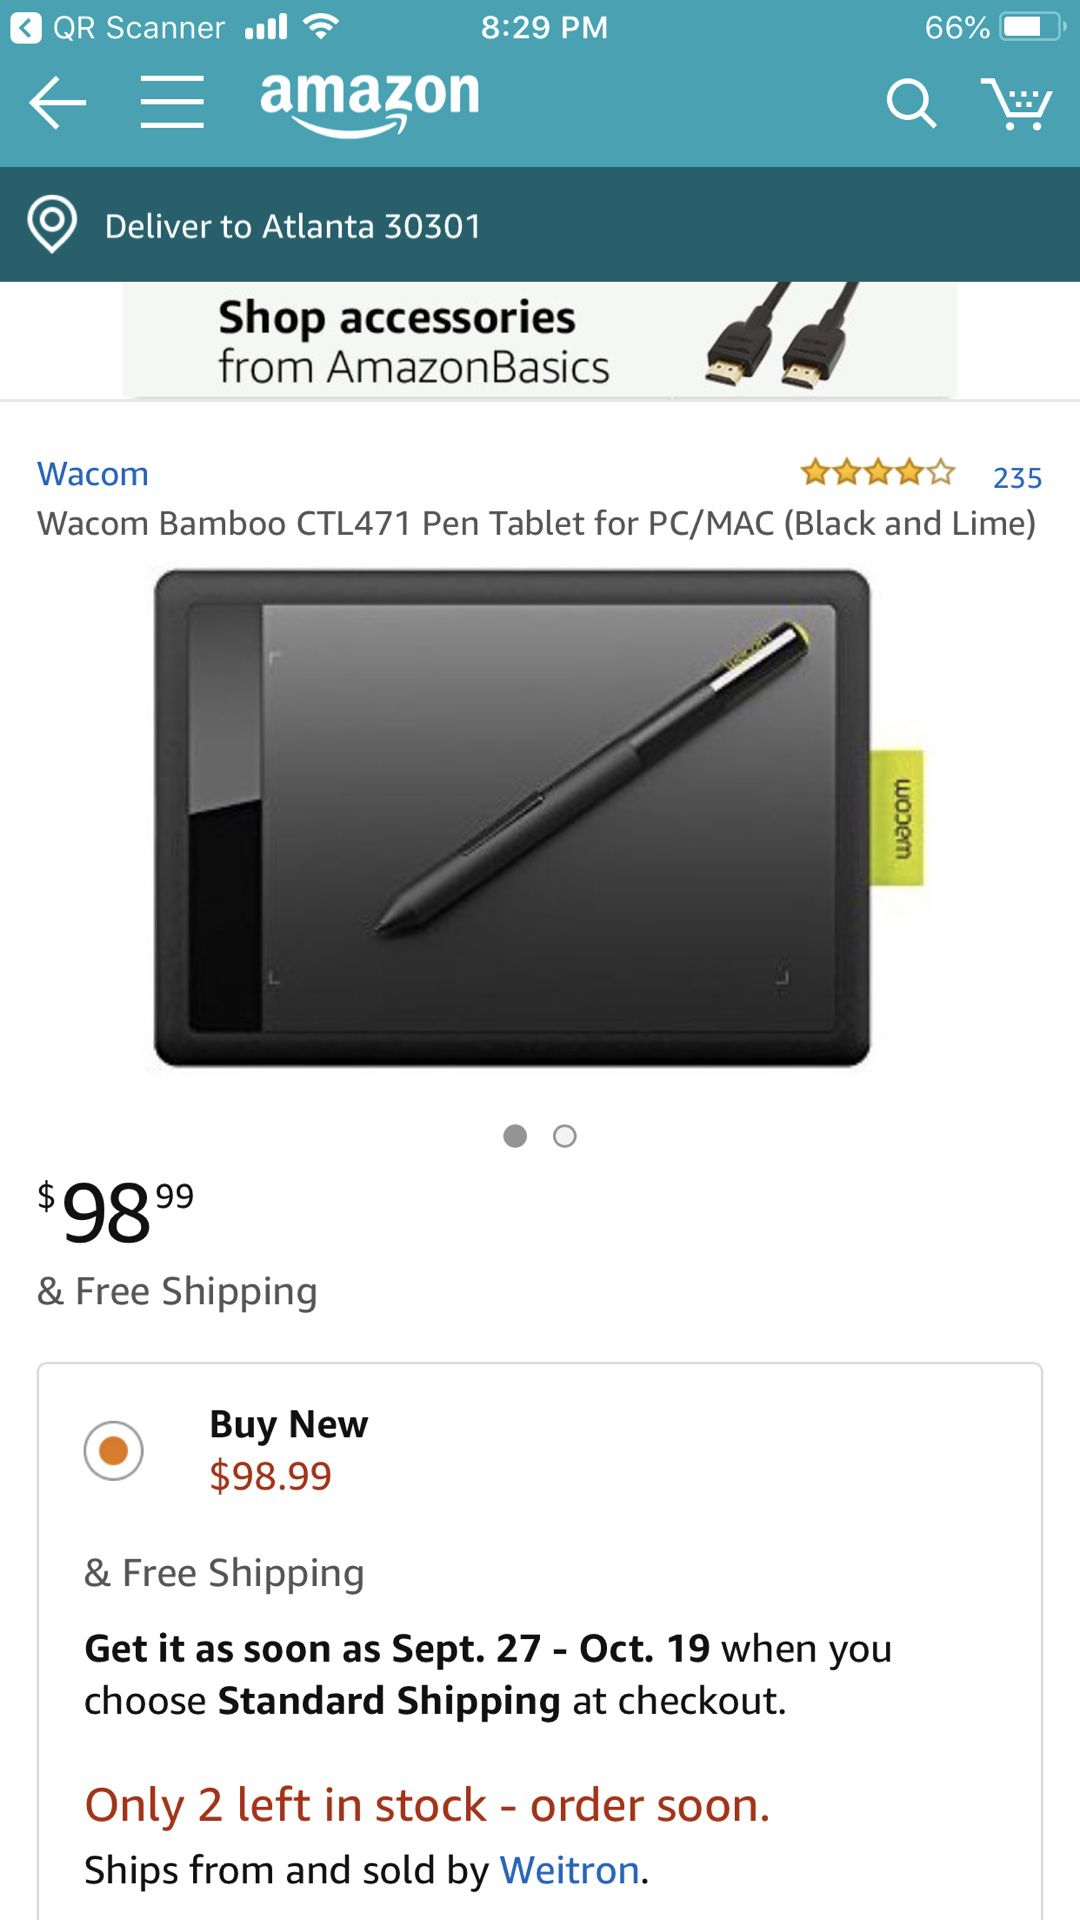 Wacom pen tablet